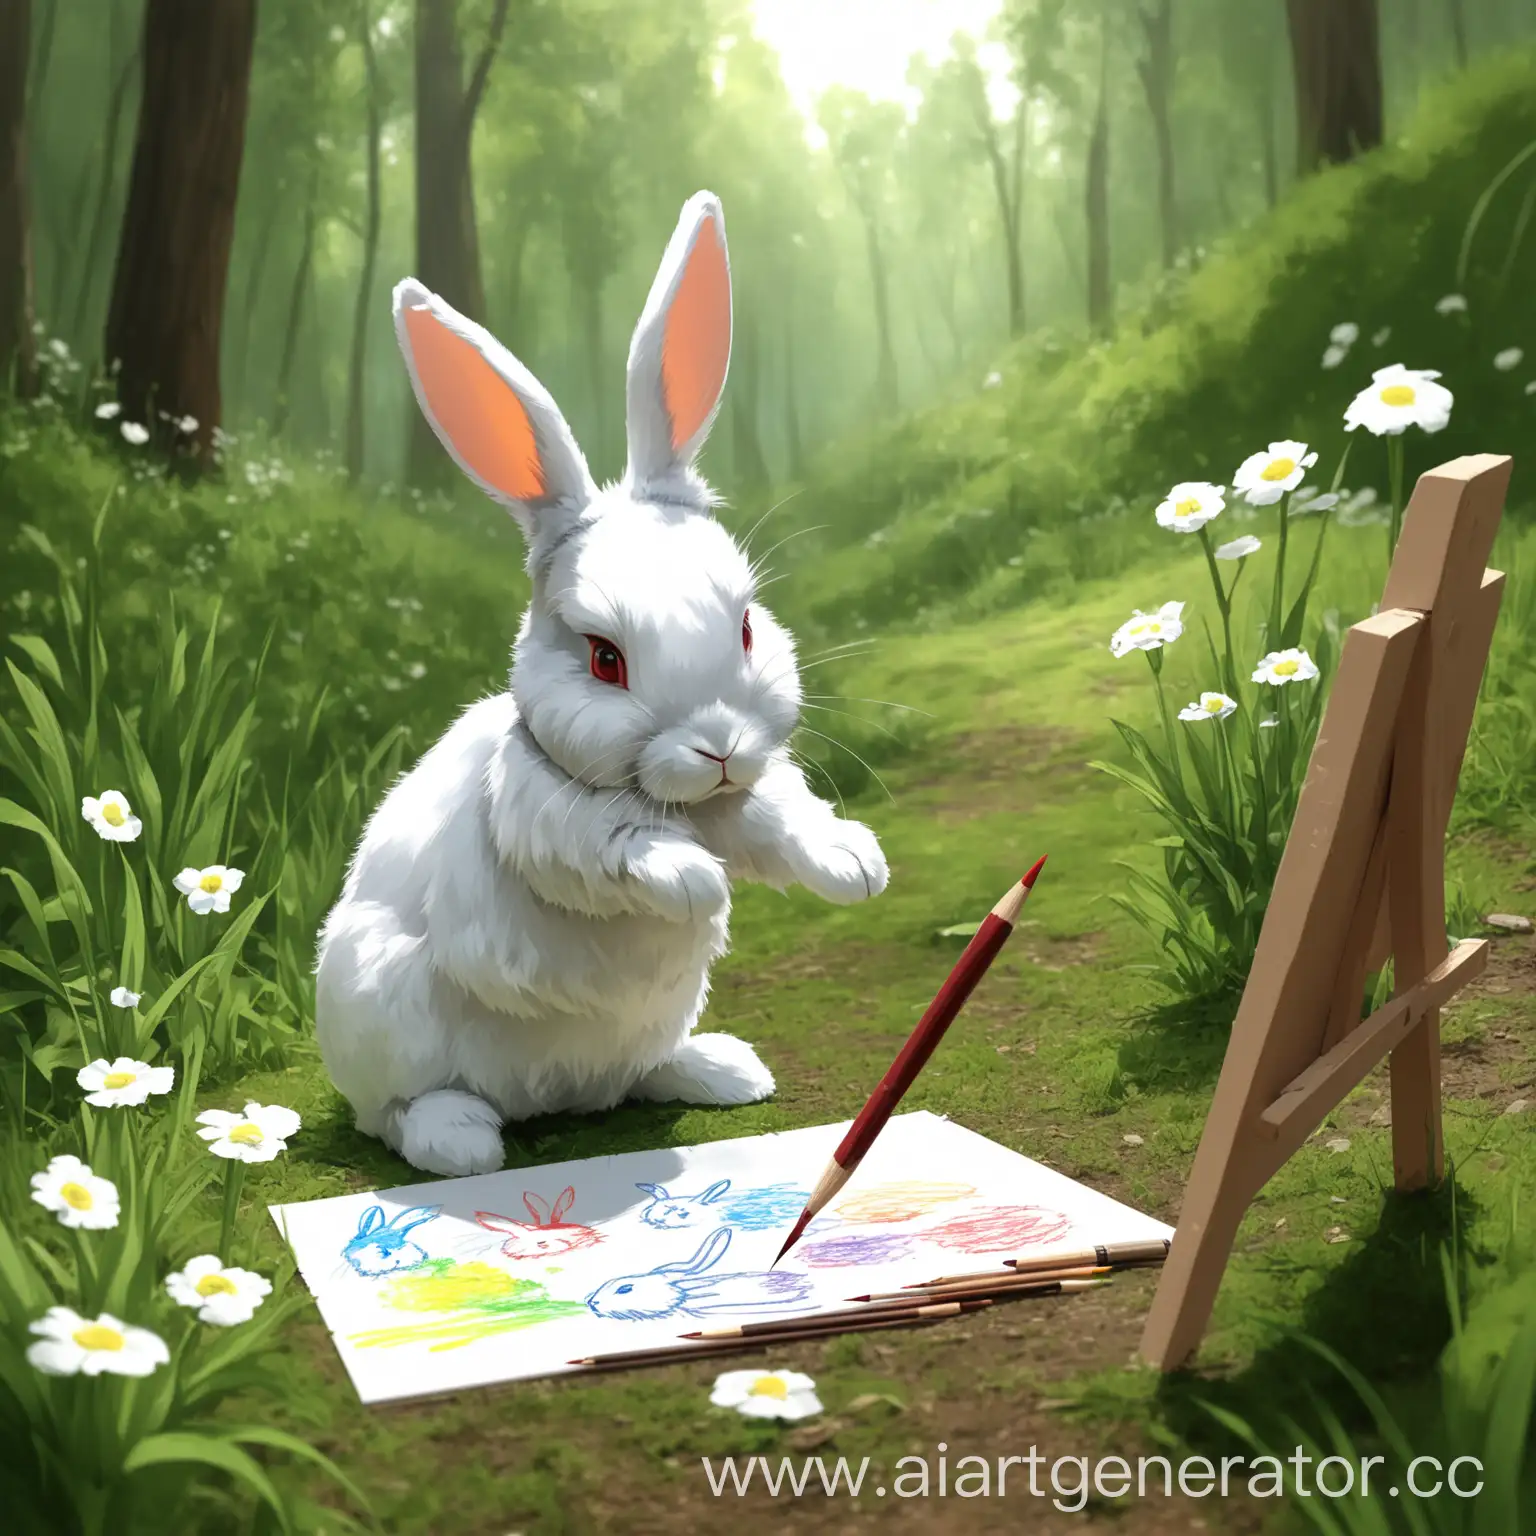 кролик работает художником, рисует на природе 